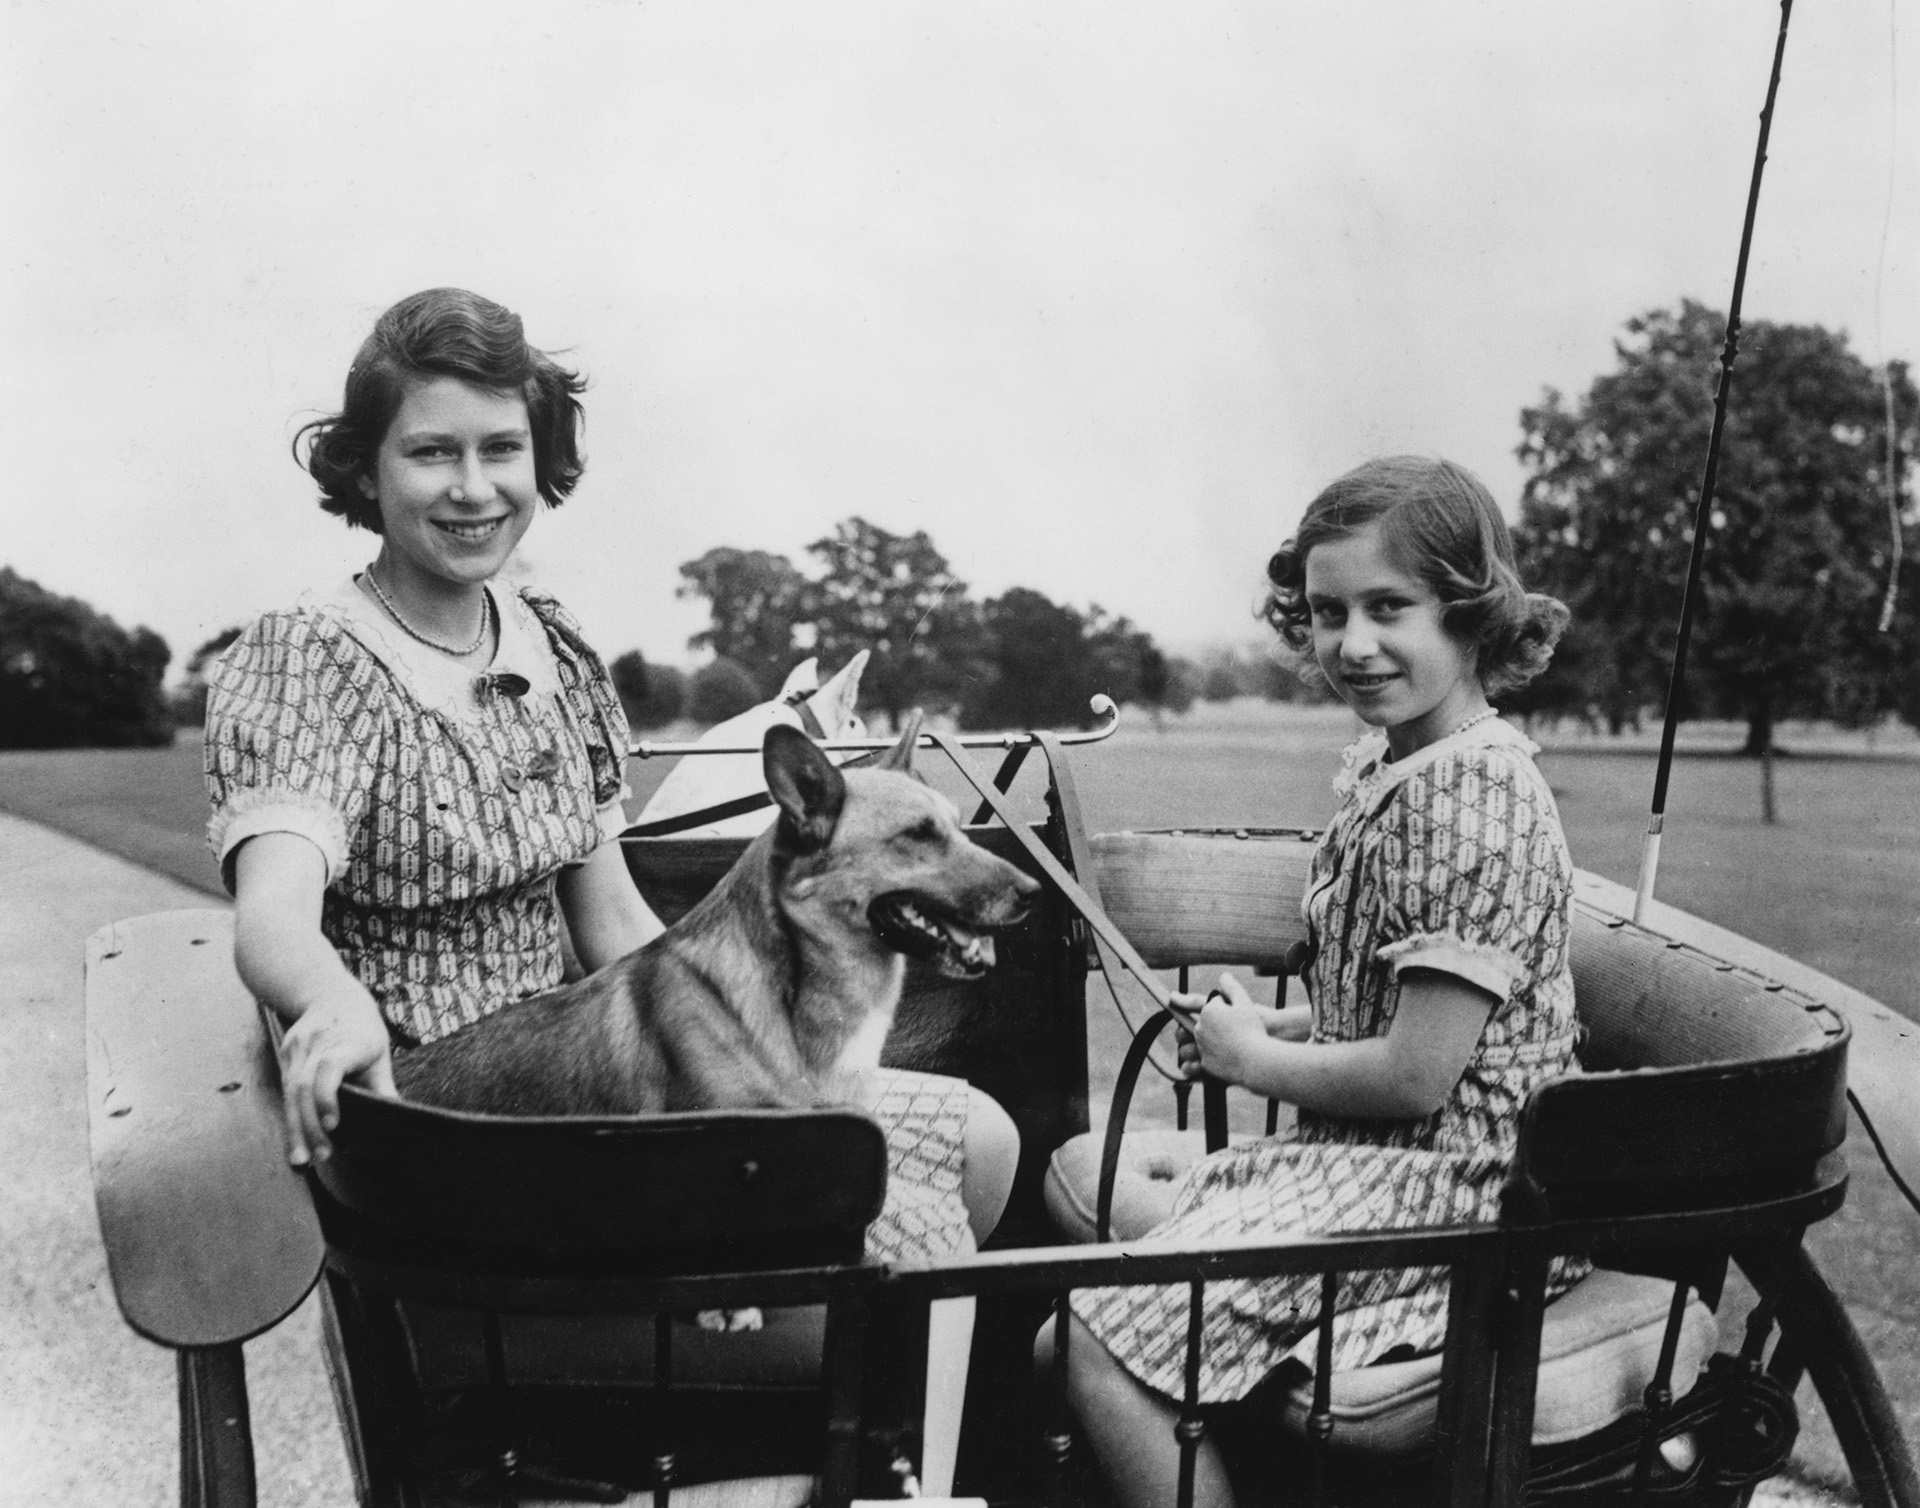 Isabel y Margarita  el 4 de julio de 1940 paseando en carruaje con sus perros. (Photo by PNA/Hulton Archive/Getty Images) 